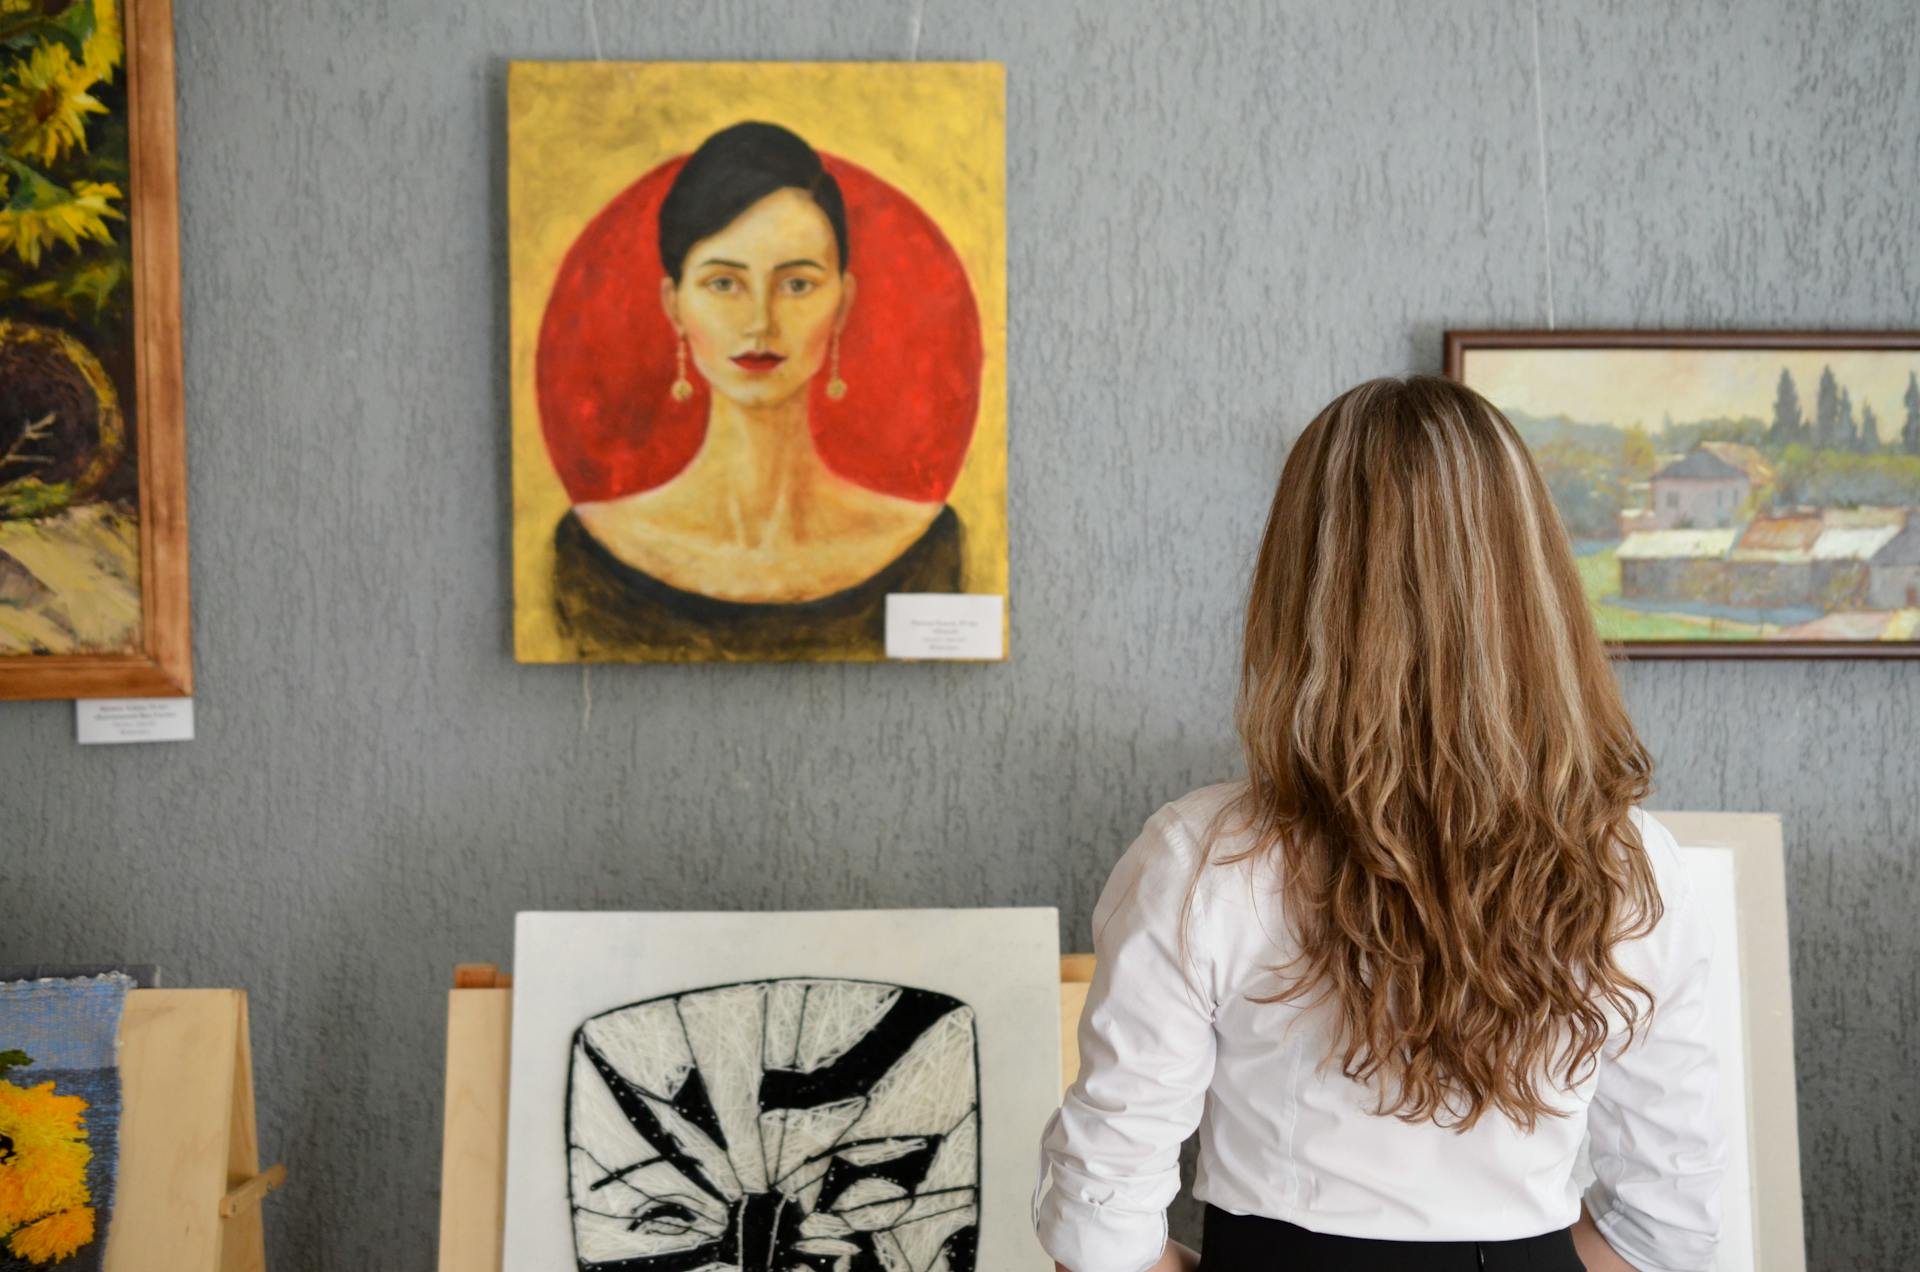 Une jeune femme regarde des peintures exposées sur un mur | Source : Pexels